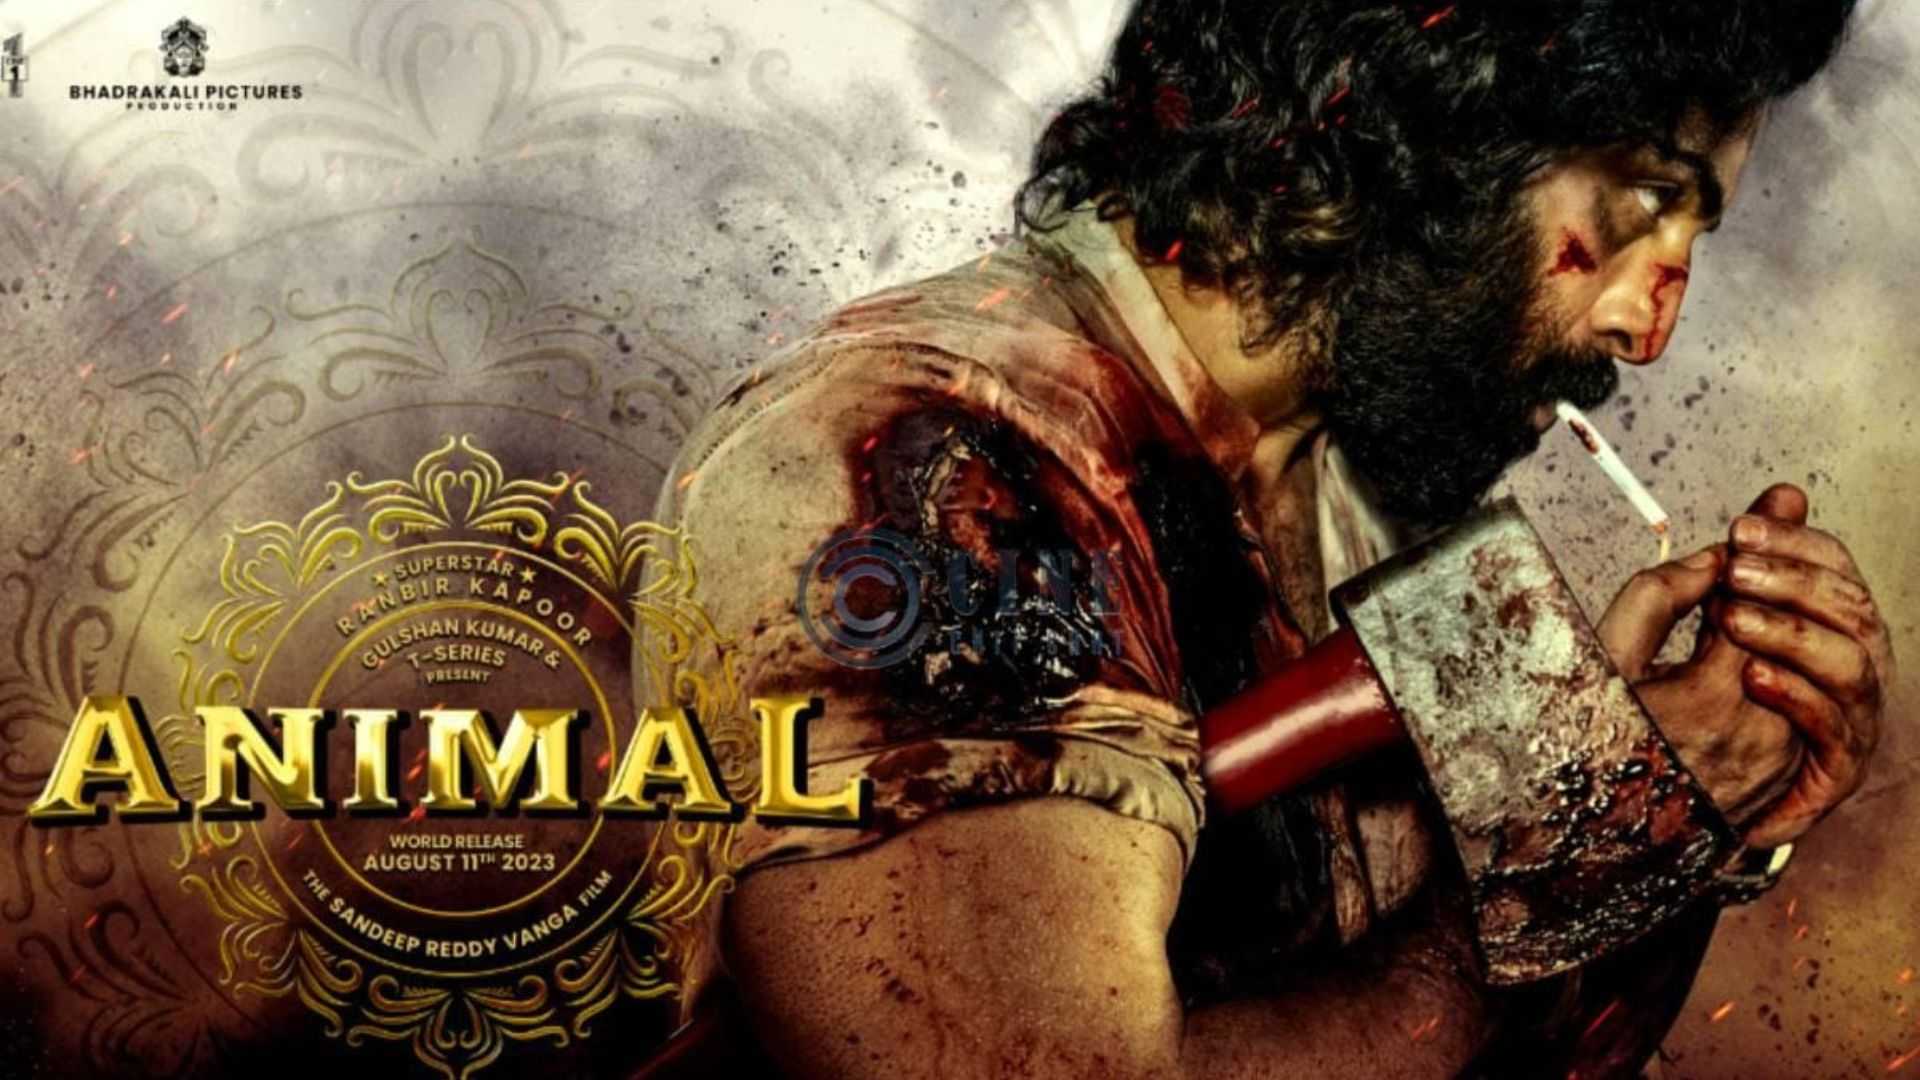 Animal box office day 17: रणबीर कपूर की फिल्म ने कमा डाले 500 करोड़, जल्द टूटेगा पठान-गदर 2 का रिकॉर्ड